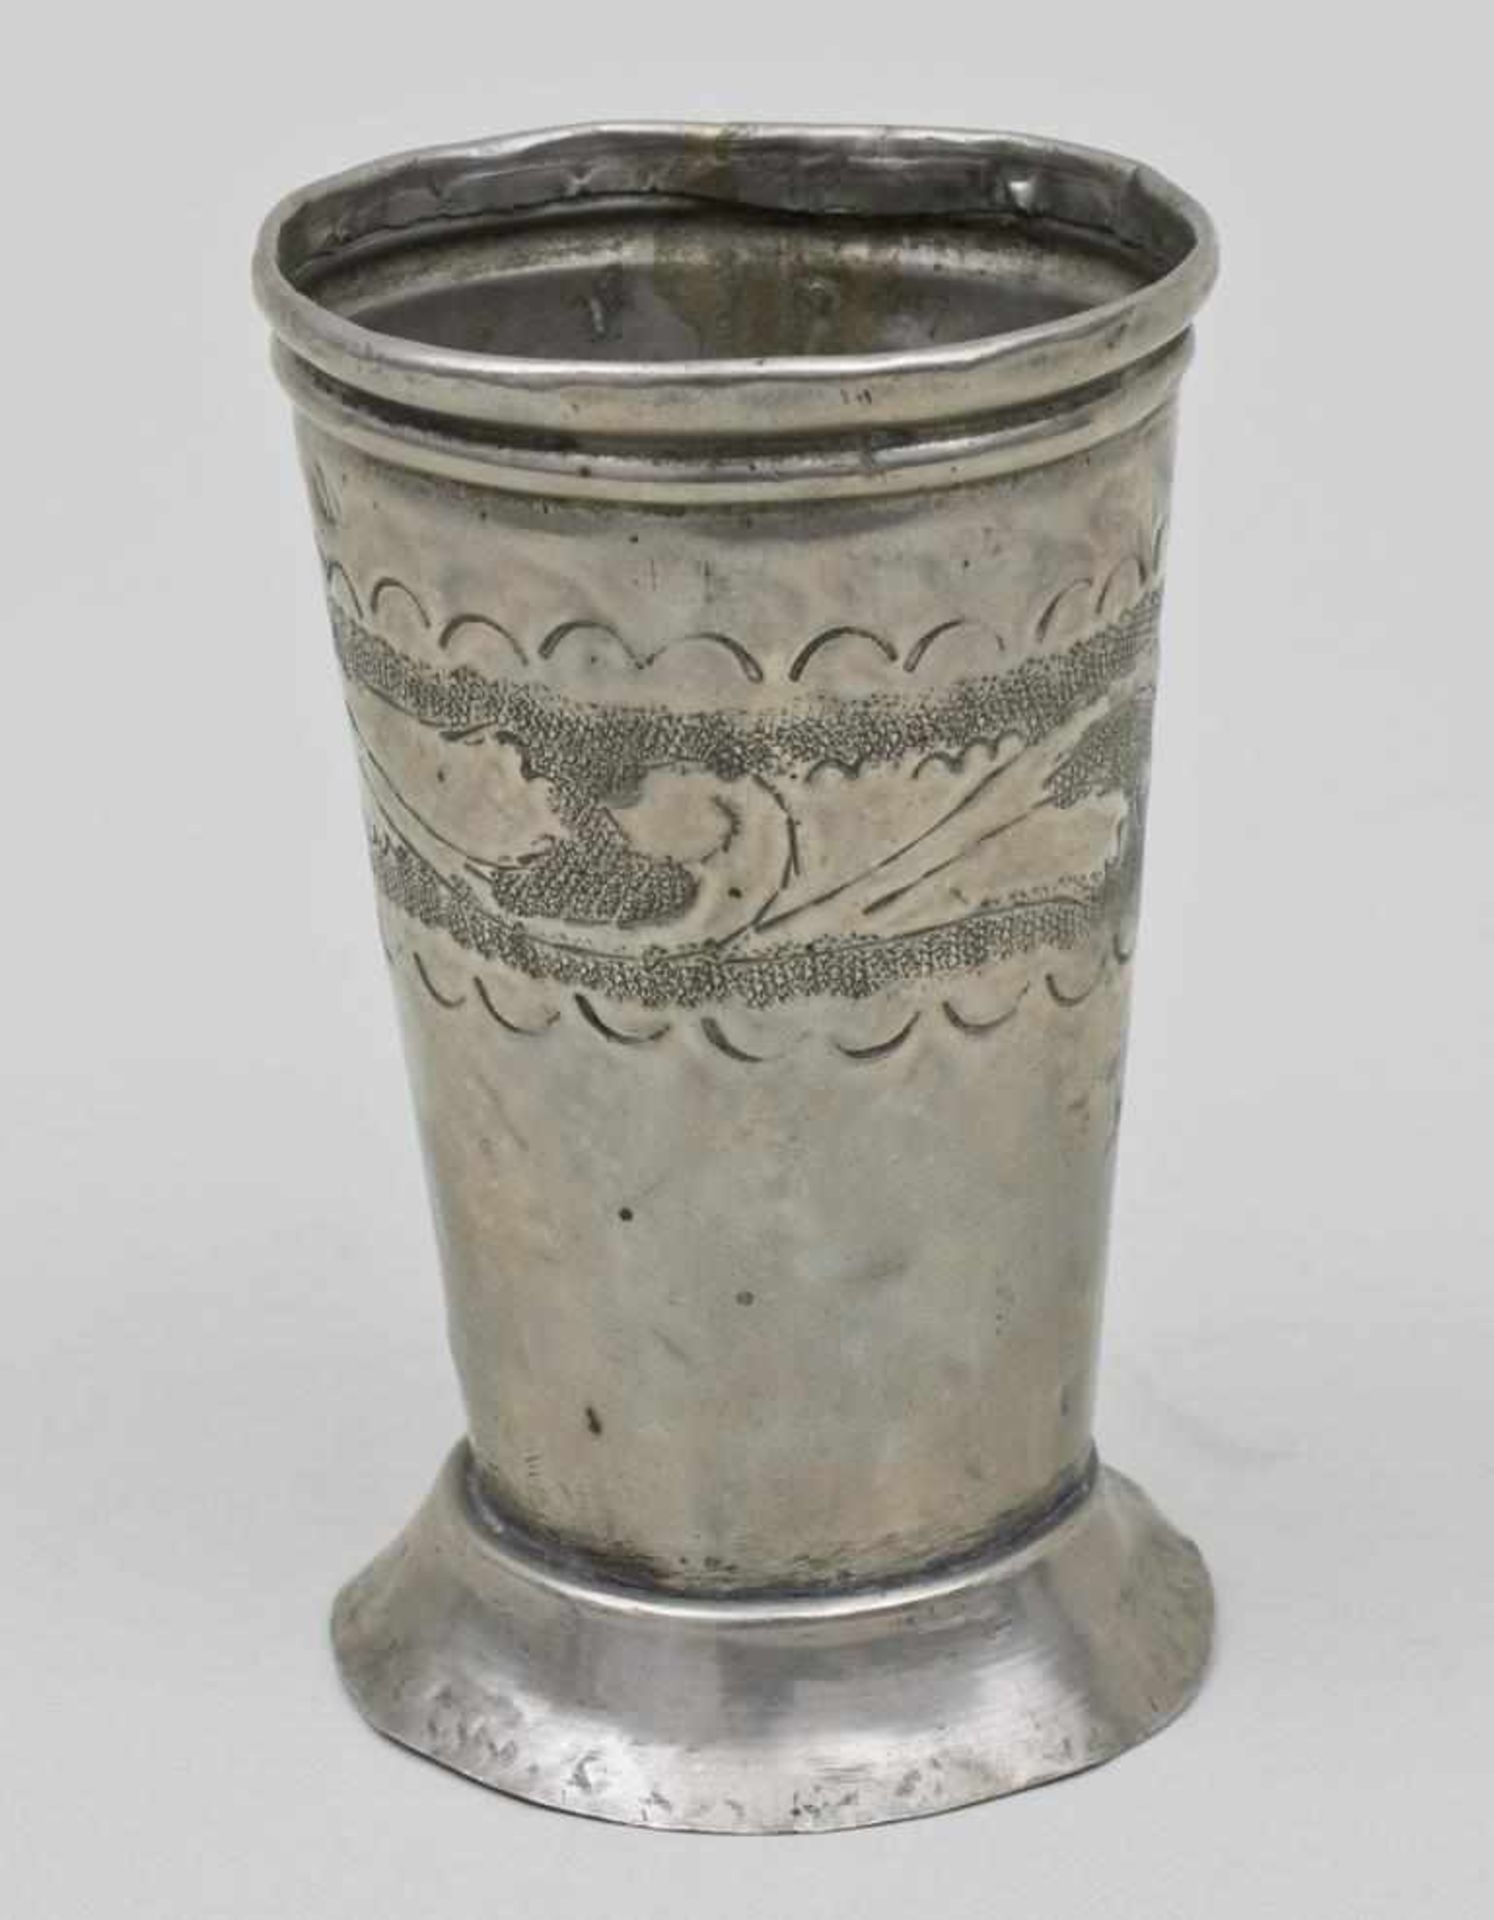 Orientalischer Fußbecher / An Oriental Goblet, wohl Persien, 19. Jh.einfach gearbeiteter konischer